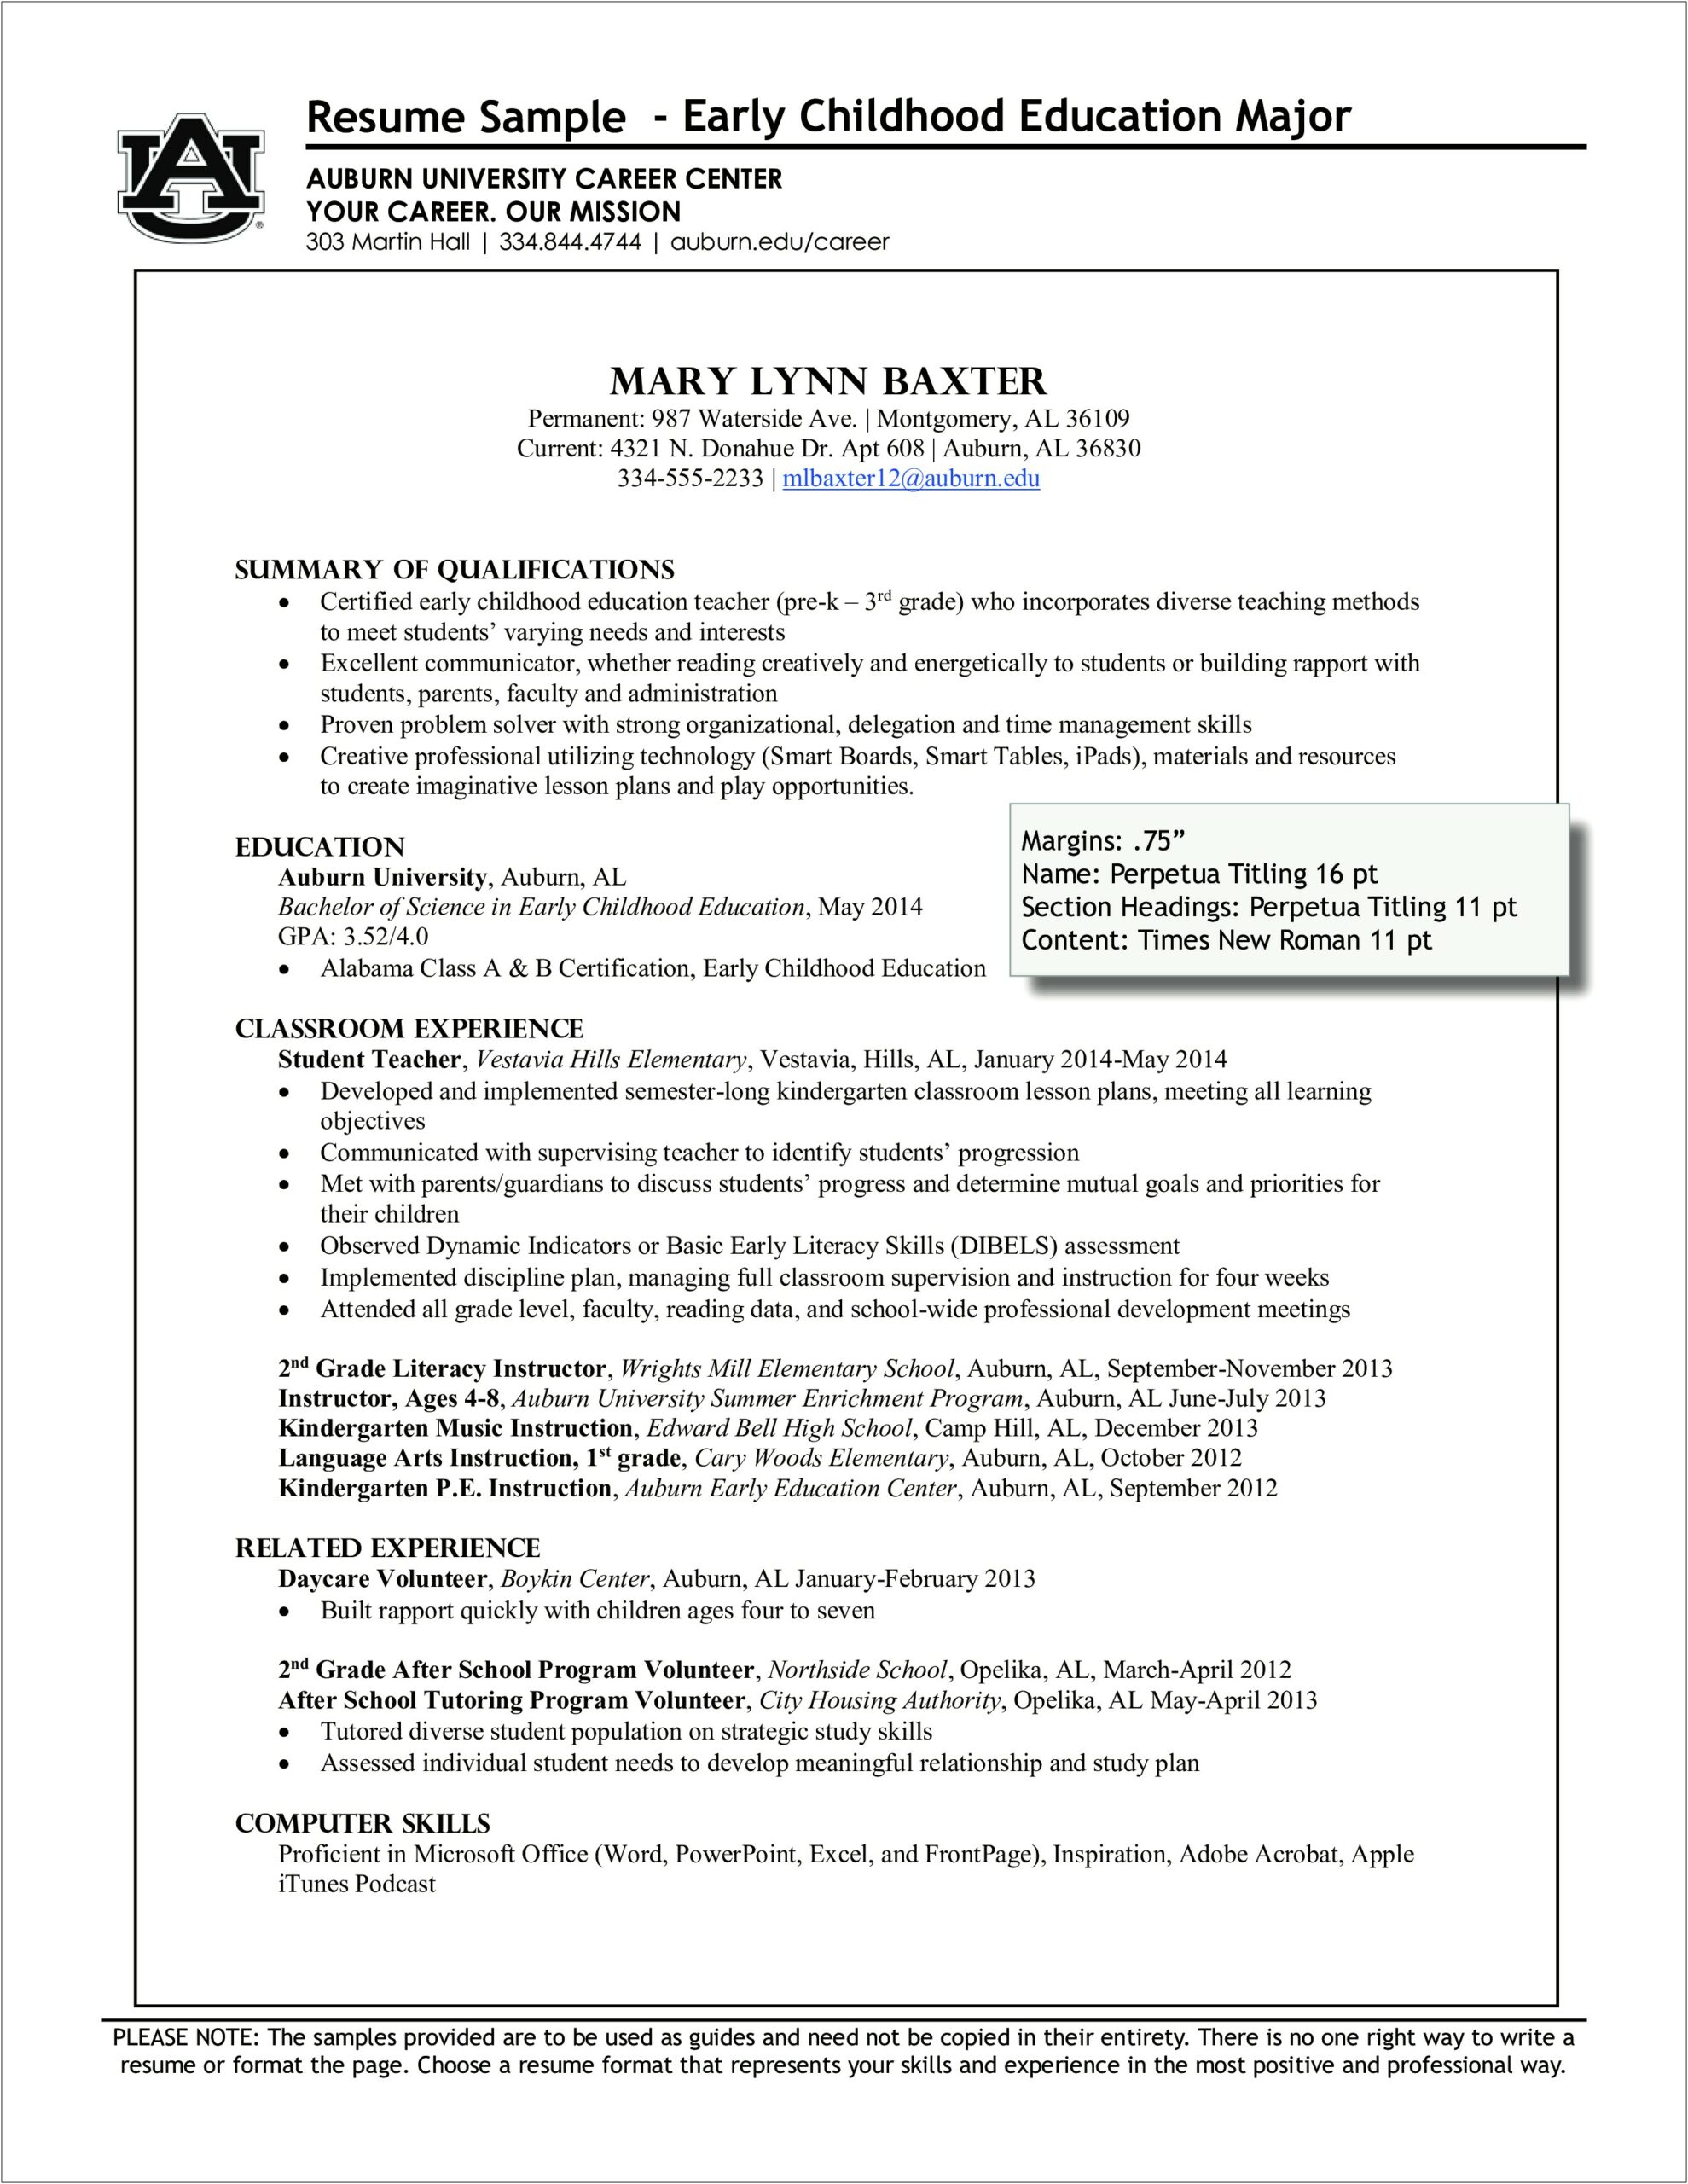 2nd Grade Teacher Job Description Resume